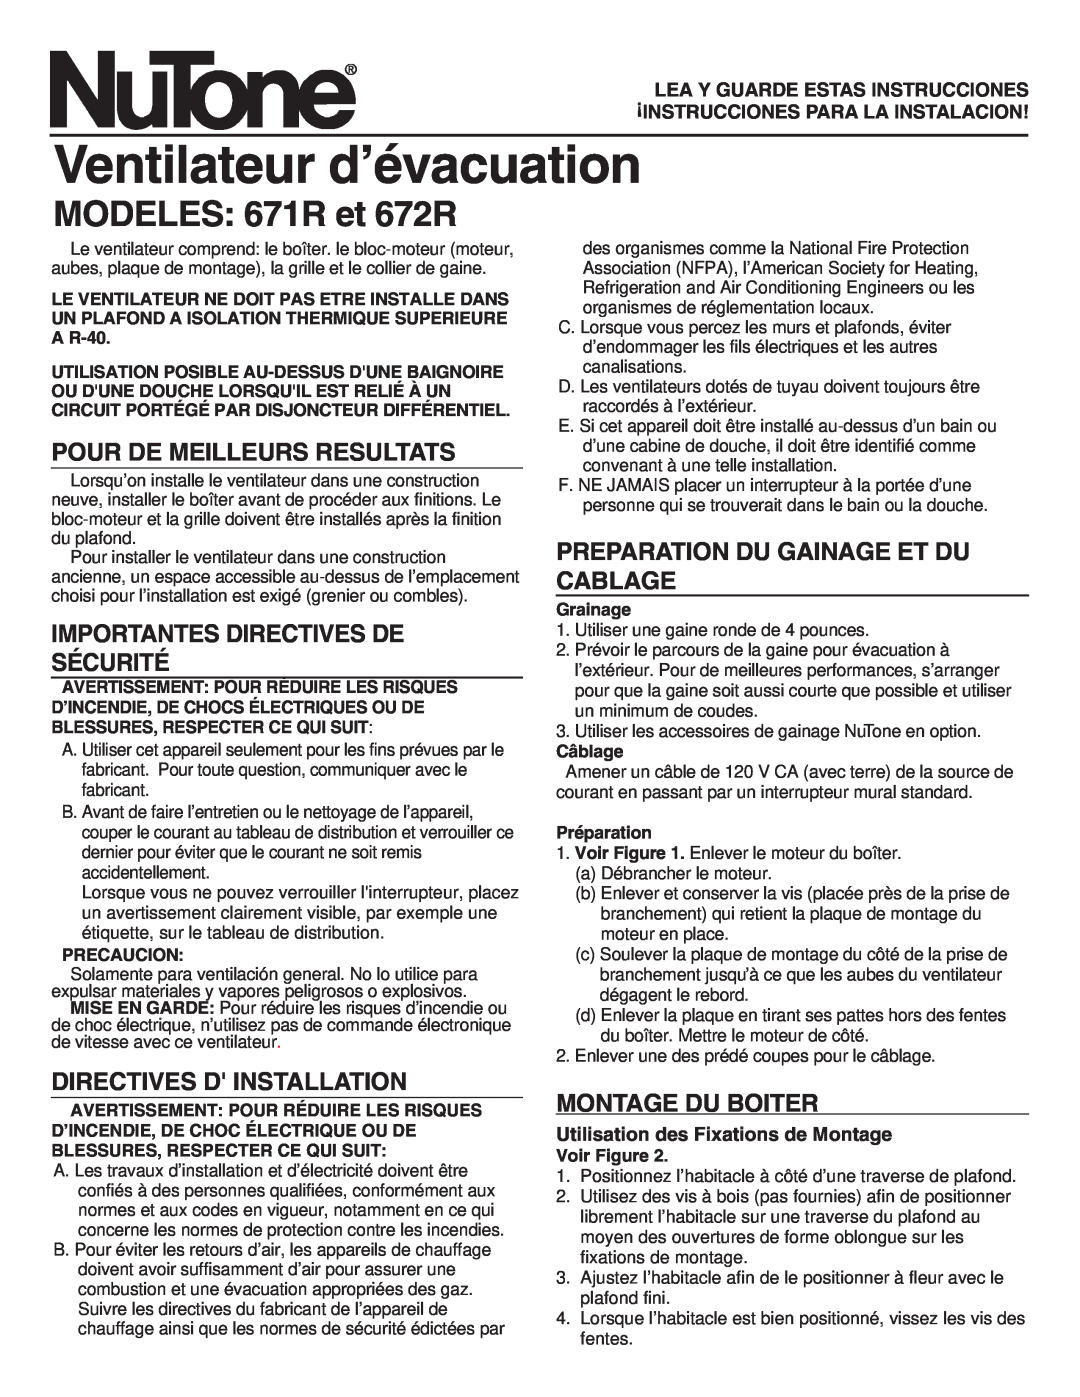 NuTone Ventilateur d’évacuation, MODELES 671R et 672R, Pour De Meilleurs Resultats, Importantes Directives De Sécurité 